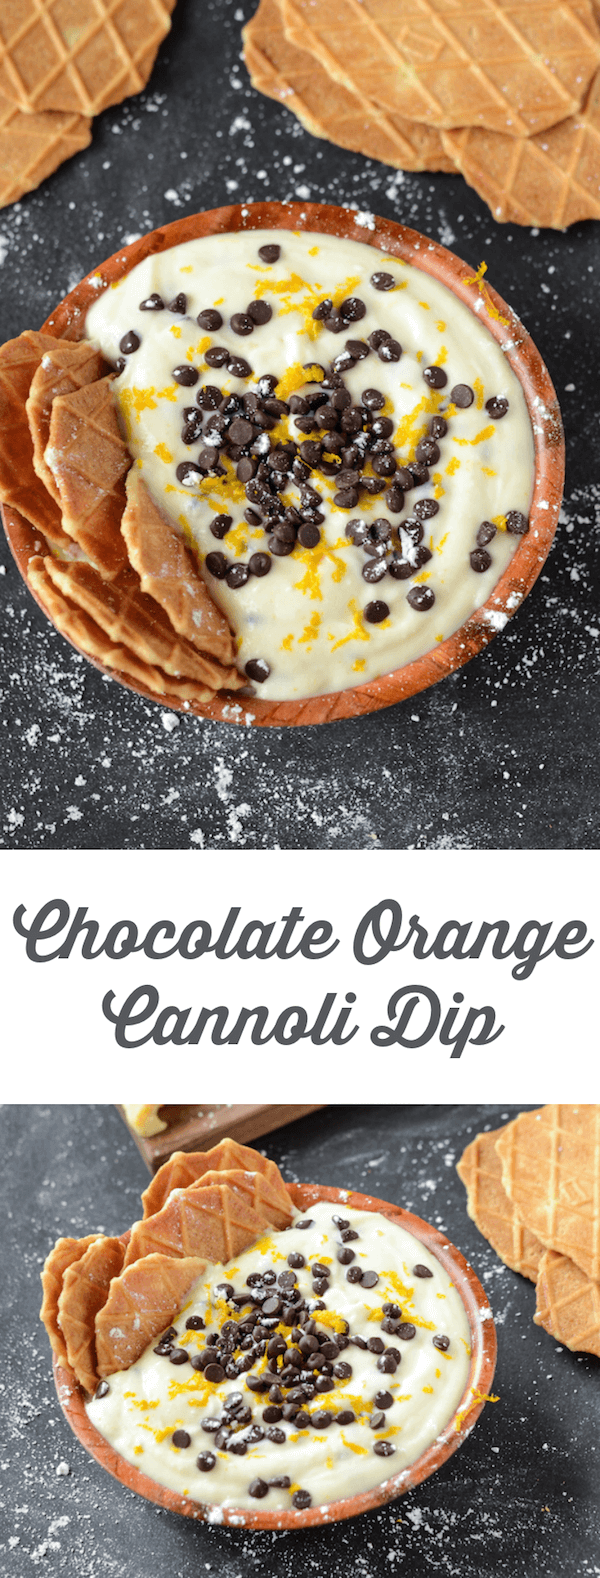 Chocolate Orange Cannoli Dip Recipe 